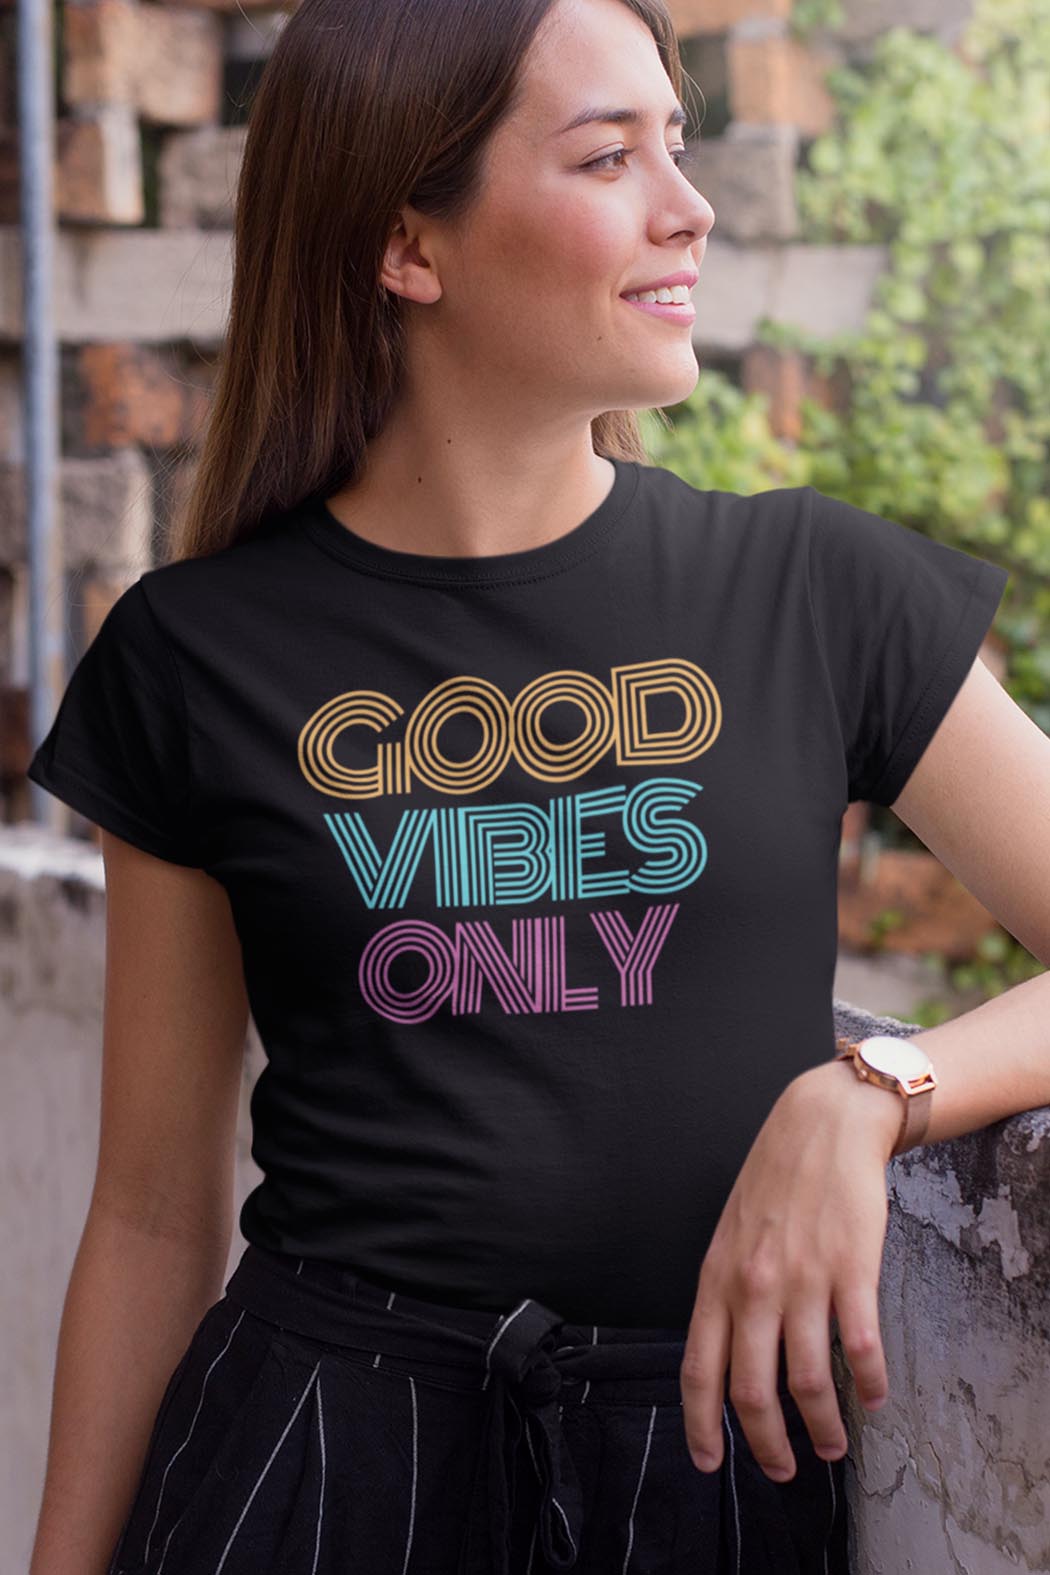 Inspirational T-Shirts - Motivational Graphic T-Shirts | MindfulSouls